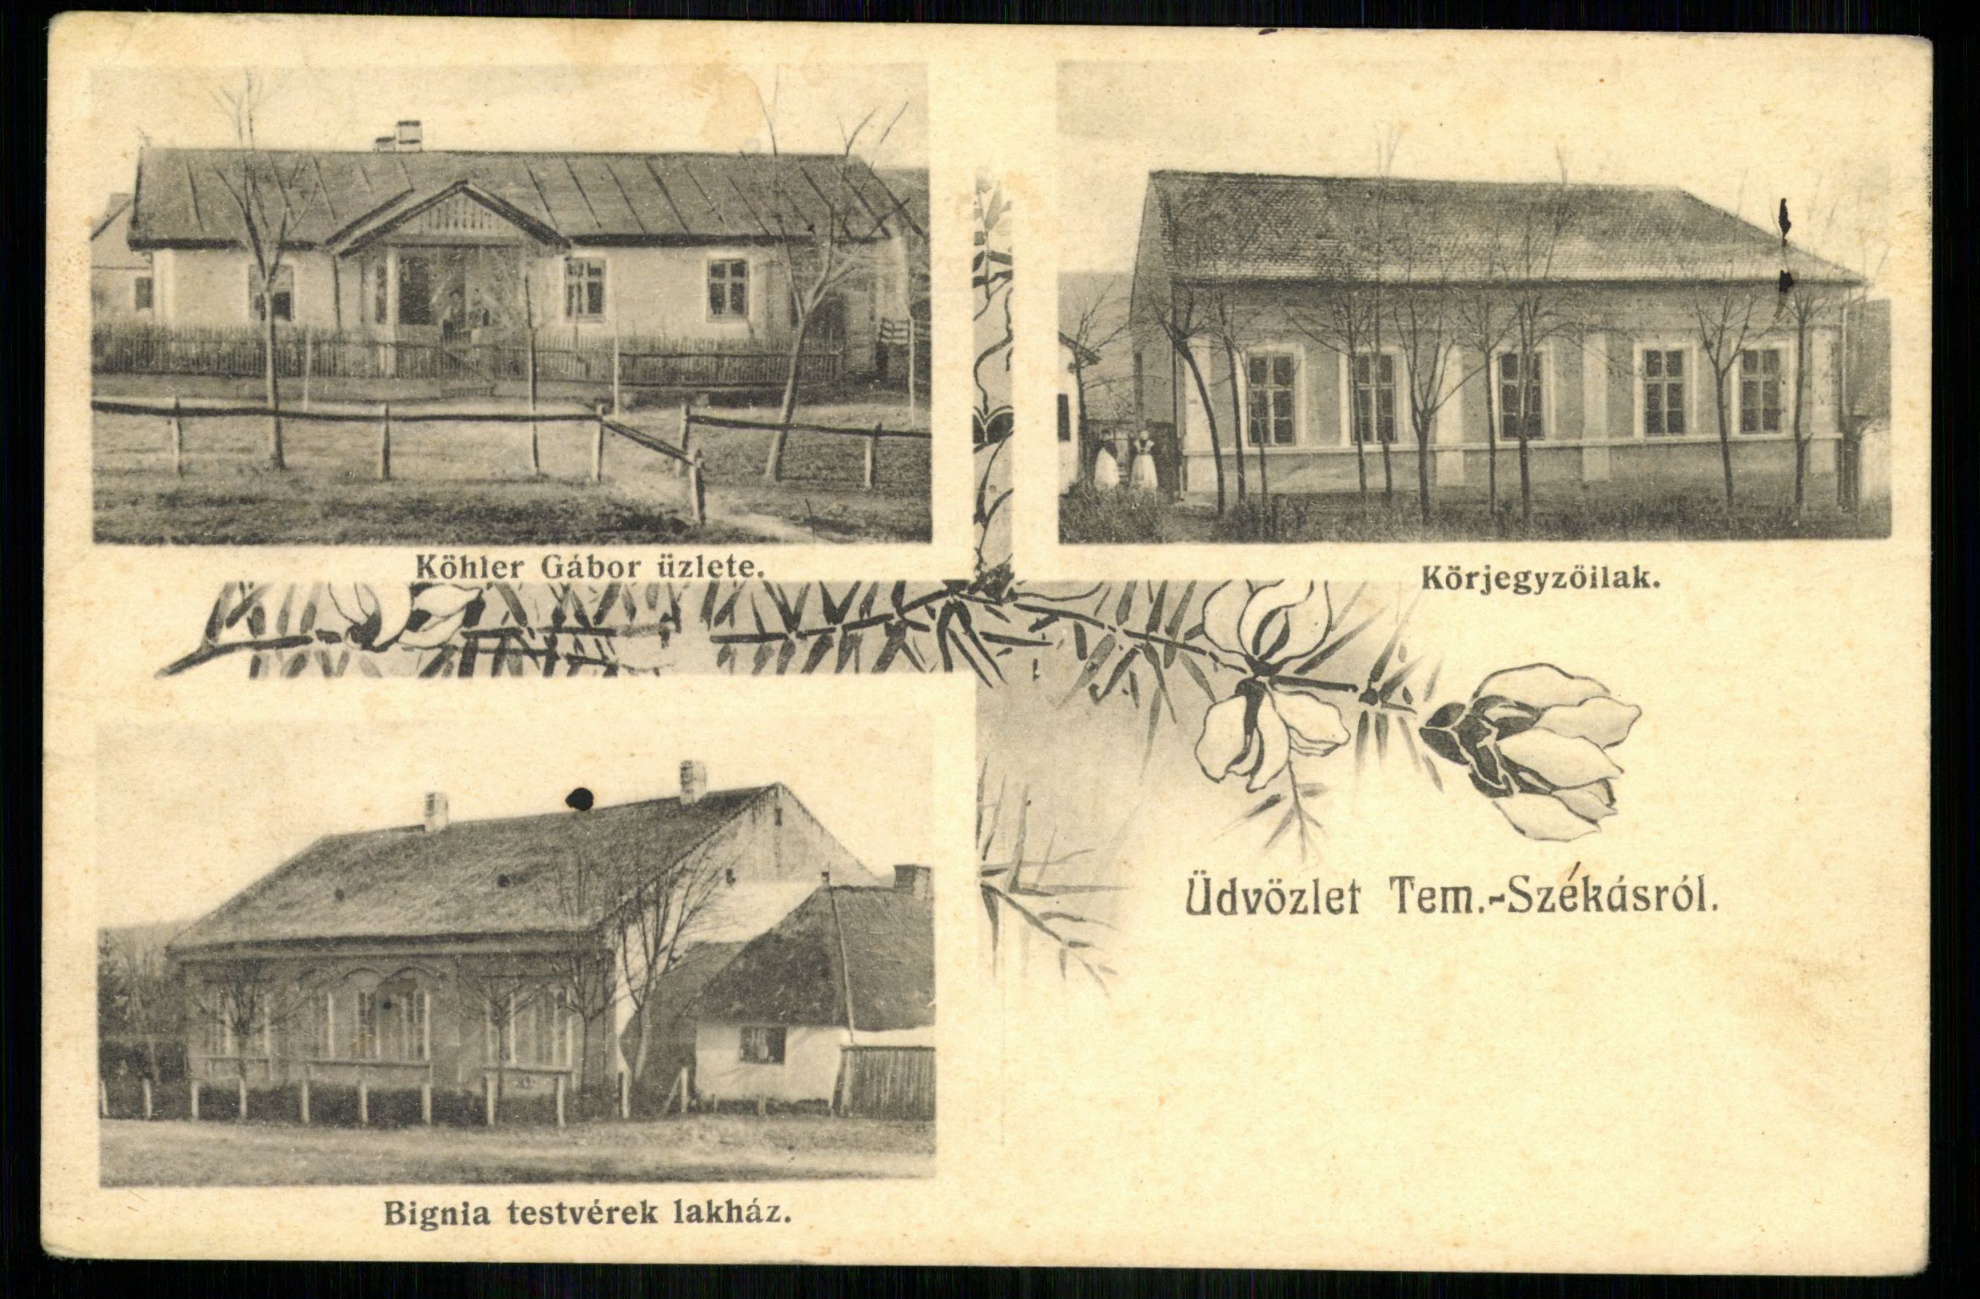 Tem.-Székás; Köhler Gábor üzlete; Körjegyzőlak; Bignia testvérek lakház (Magyar Kereskedelmi és Vendéglátóipari Múzeum CC BY-NC-ND)